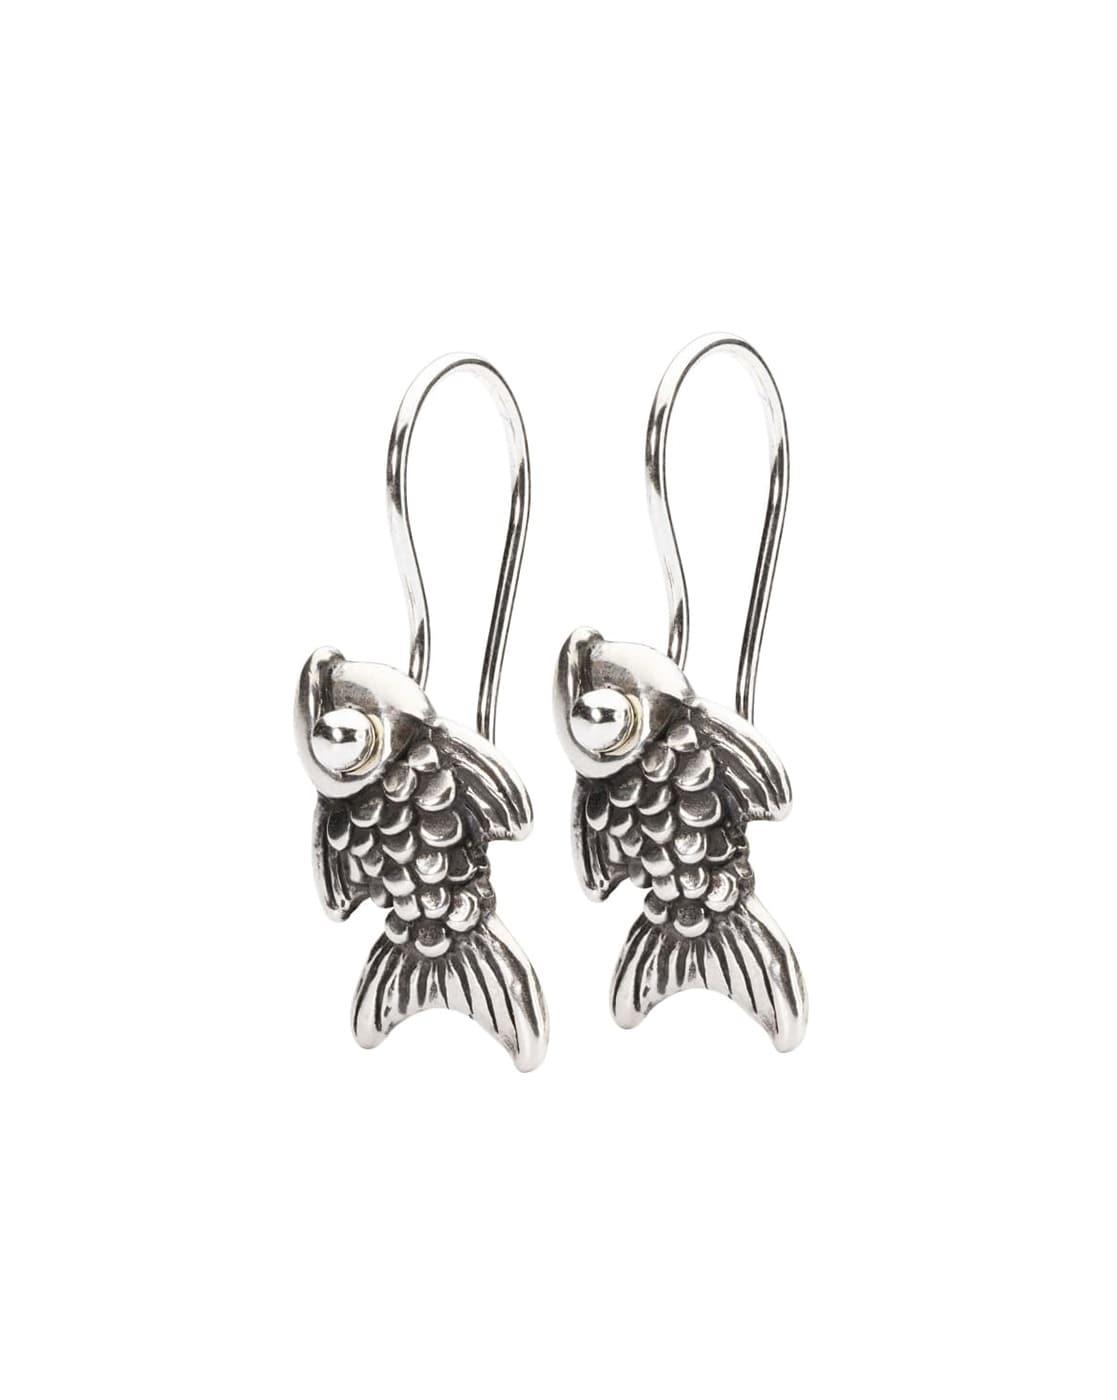 Koi Fish Dangle Earrings  SewGeek  by sewgeek